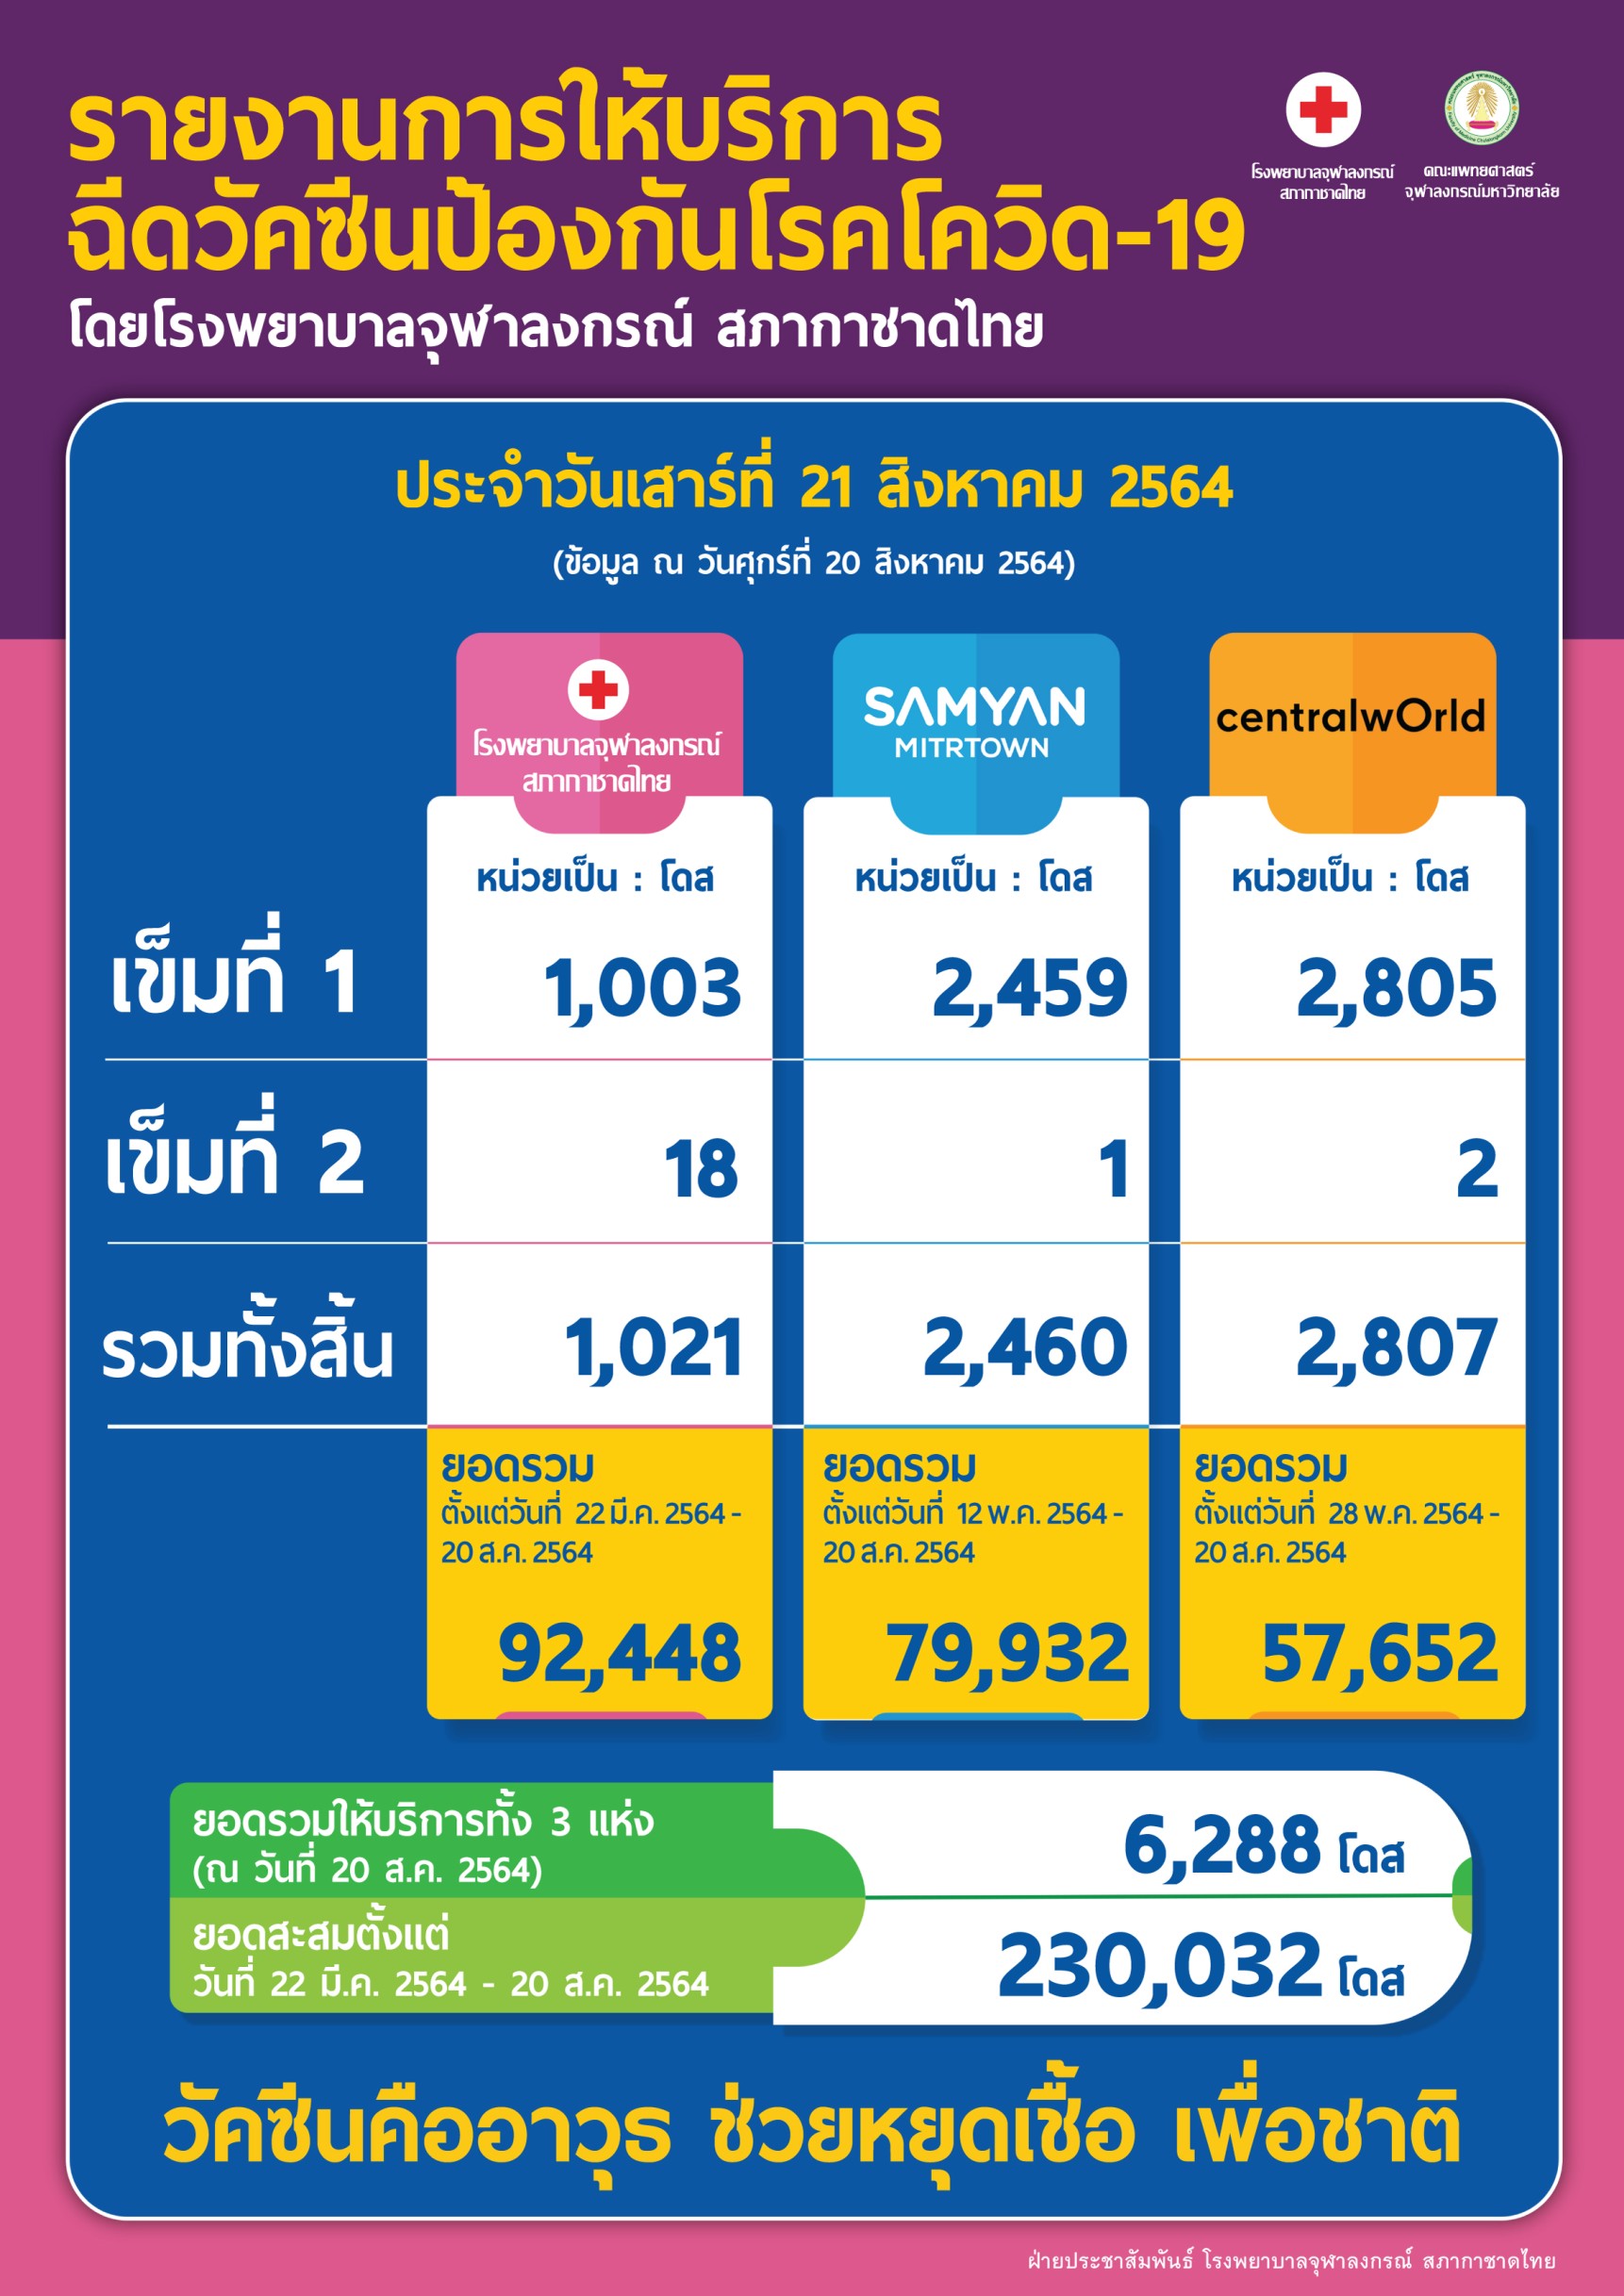 รายงานการให้บริการ ฉีดวัคซีนป้องกันโรคโควิด-19 โดยโรงพยาบาลจุฬาลงกรณ์ สภากาชาดไทย ประจำวันเสาร์ที่ 21 สิงหาคม 2564